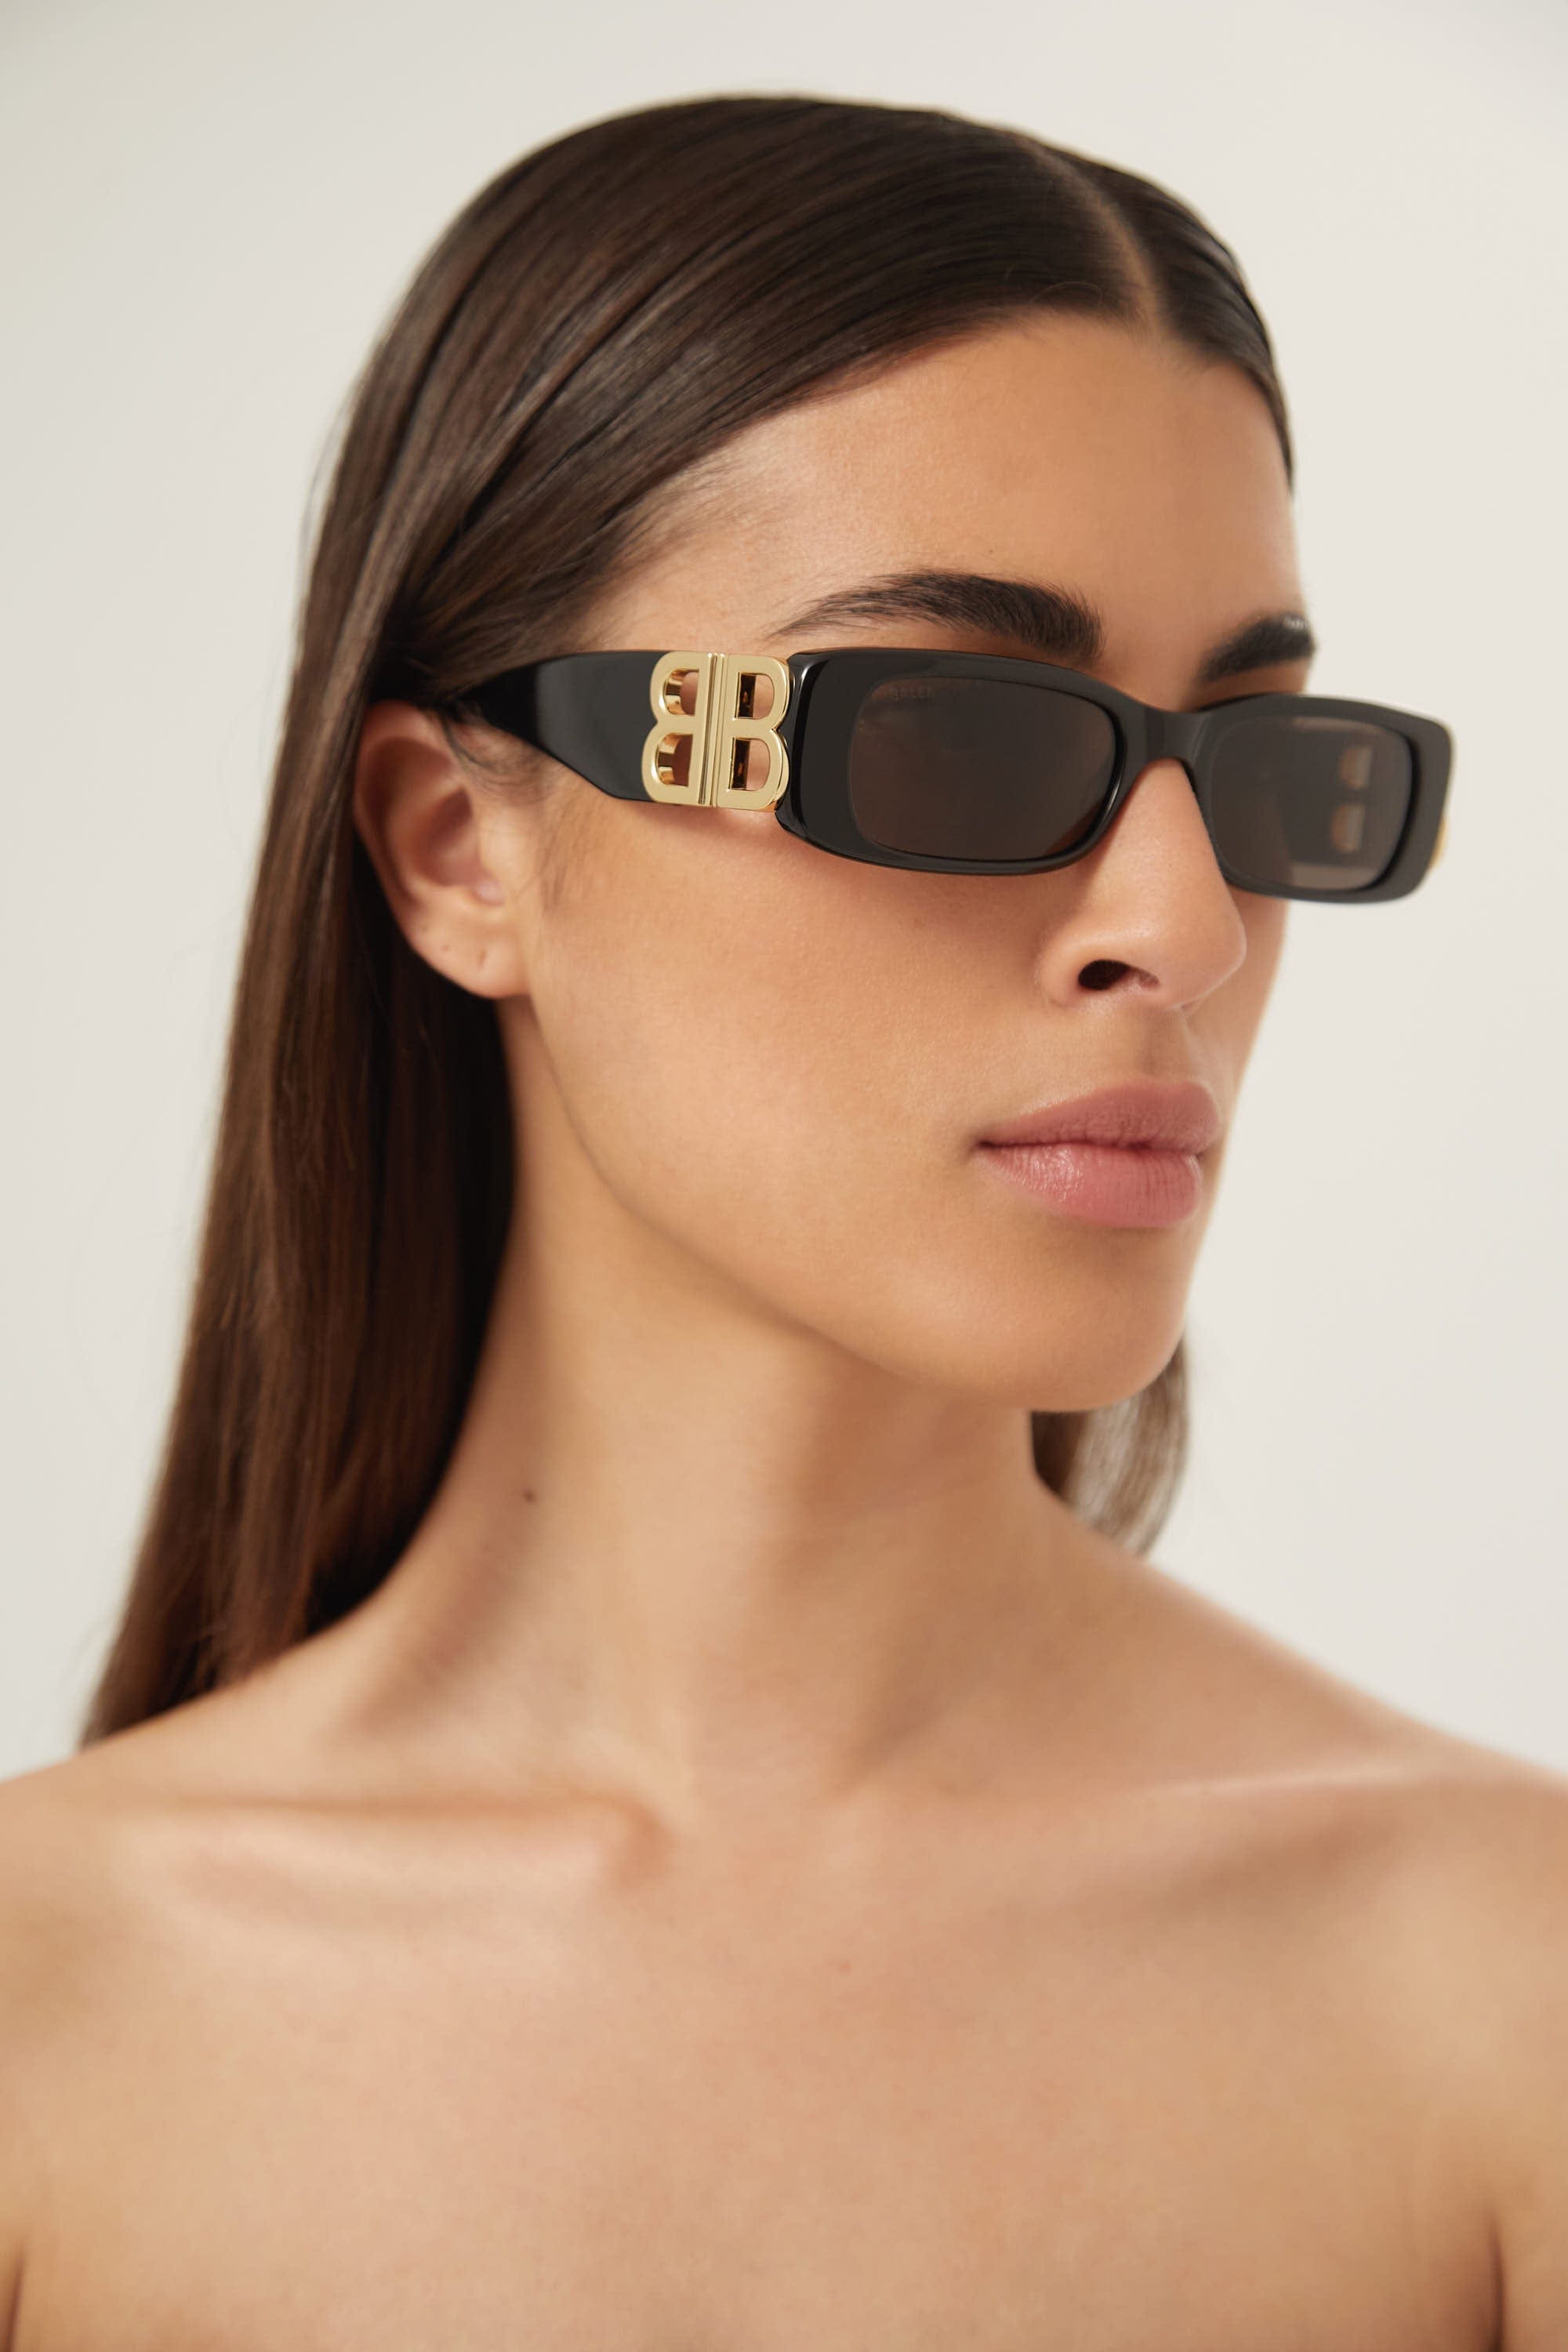 BB0096s-001 Balenciaga Dynasty black sunglasses featuring BB gold logo - Eyewear Club